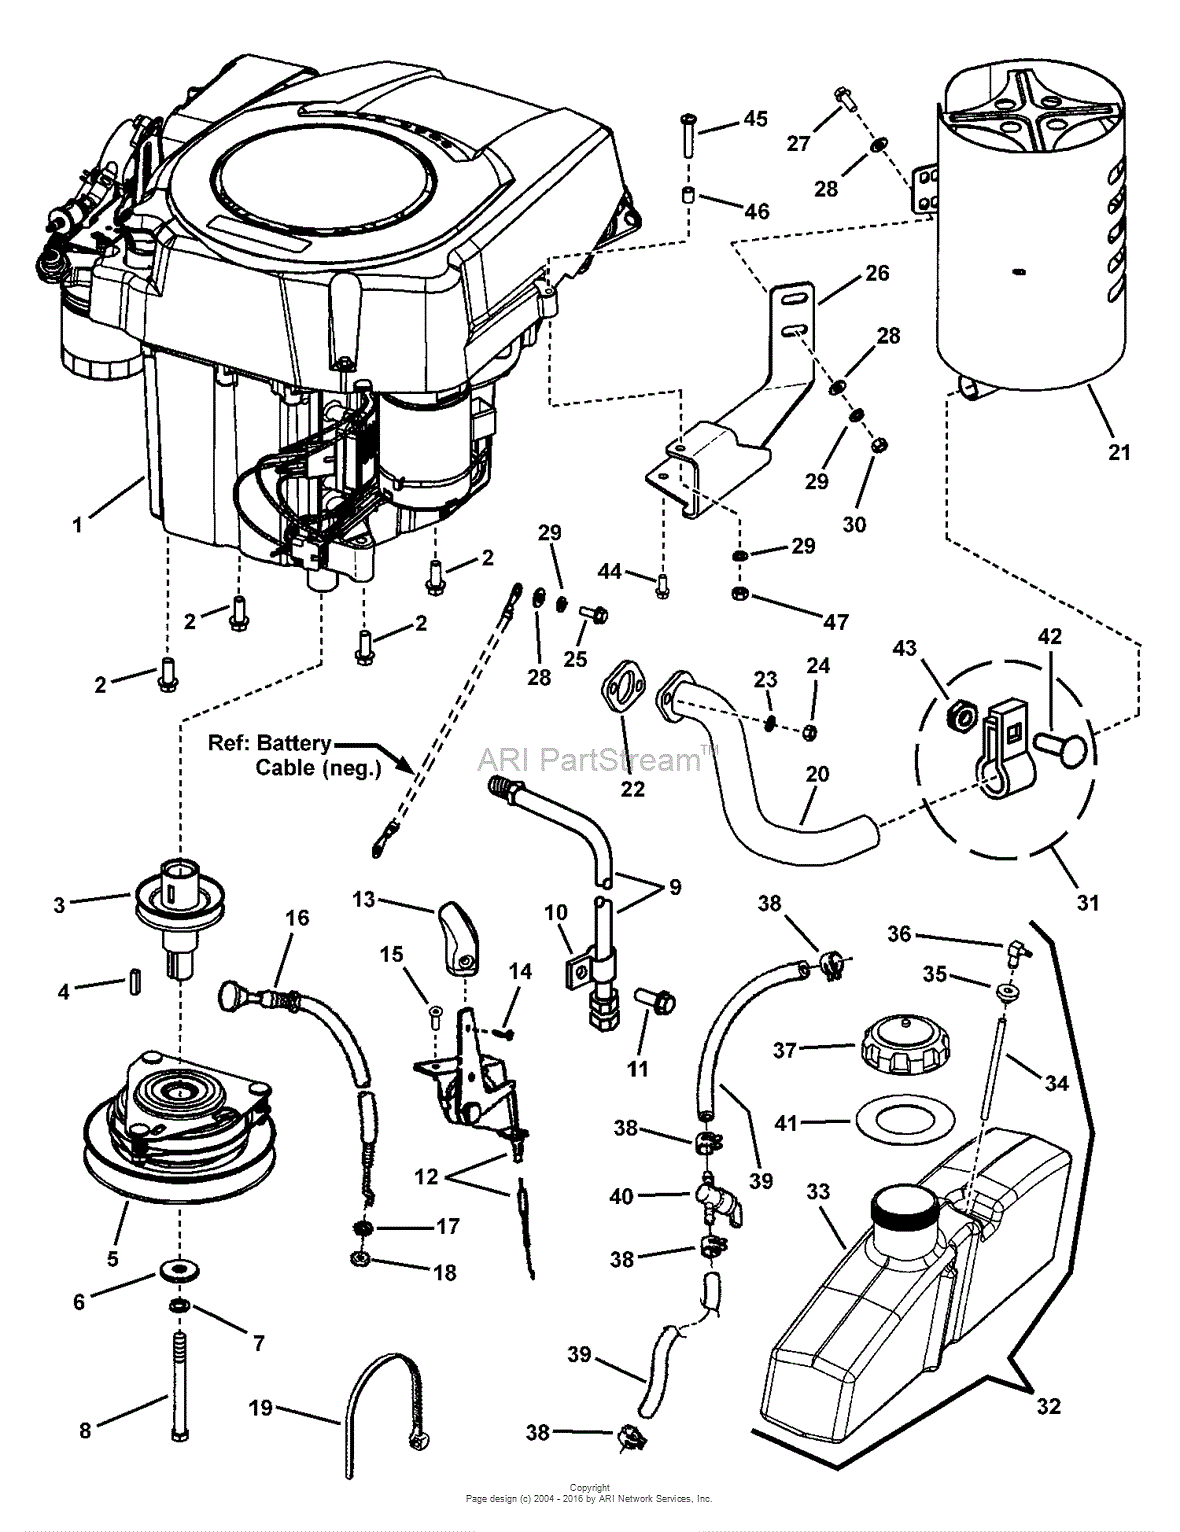 Kohler 27 Hp Carburetor Diagram 1